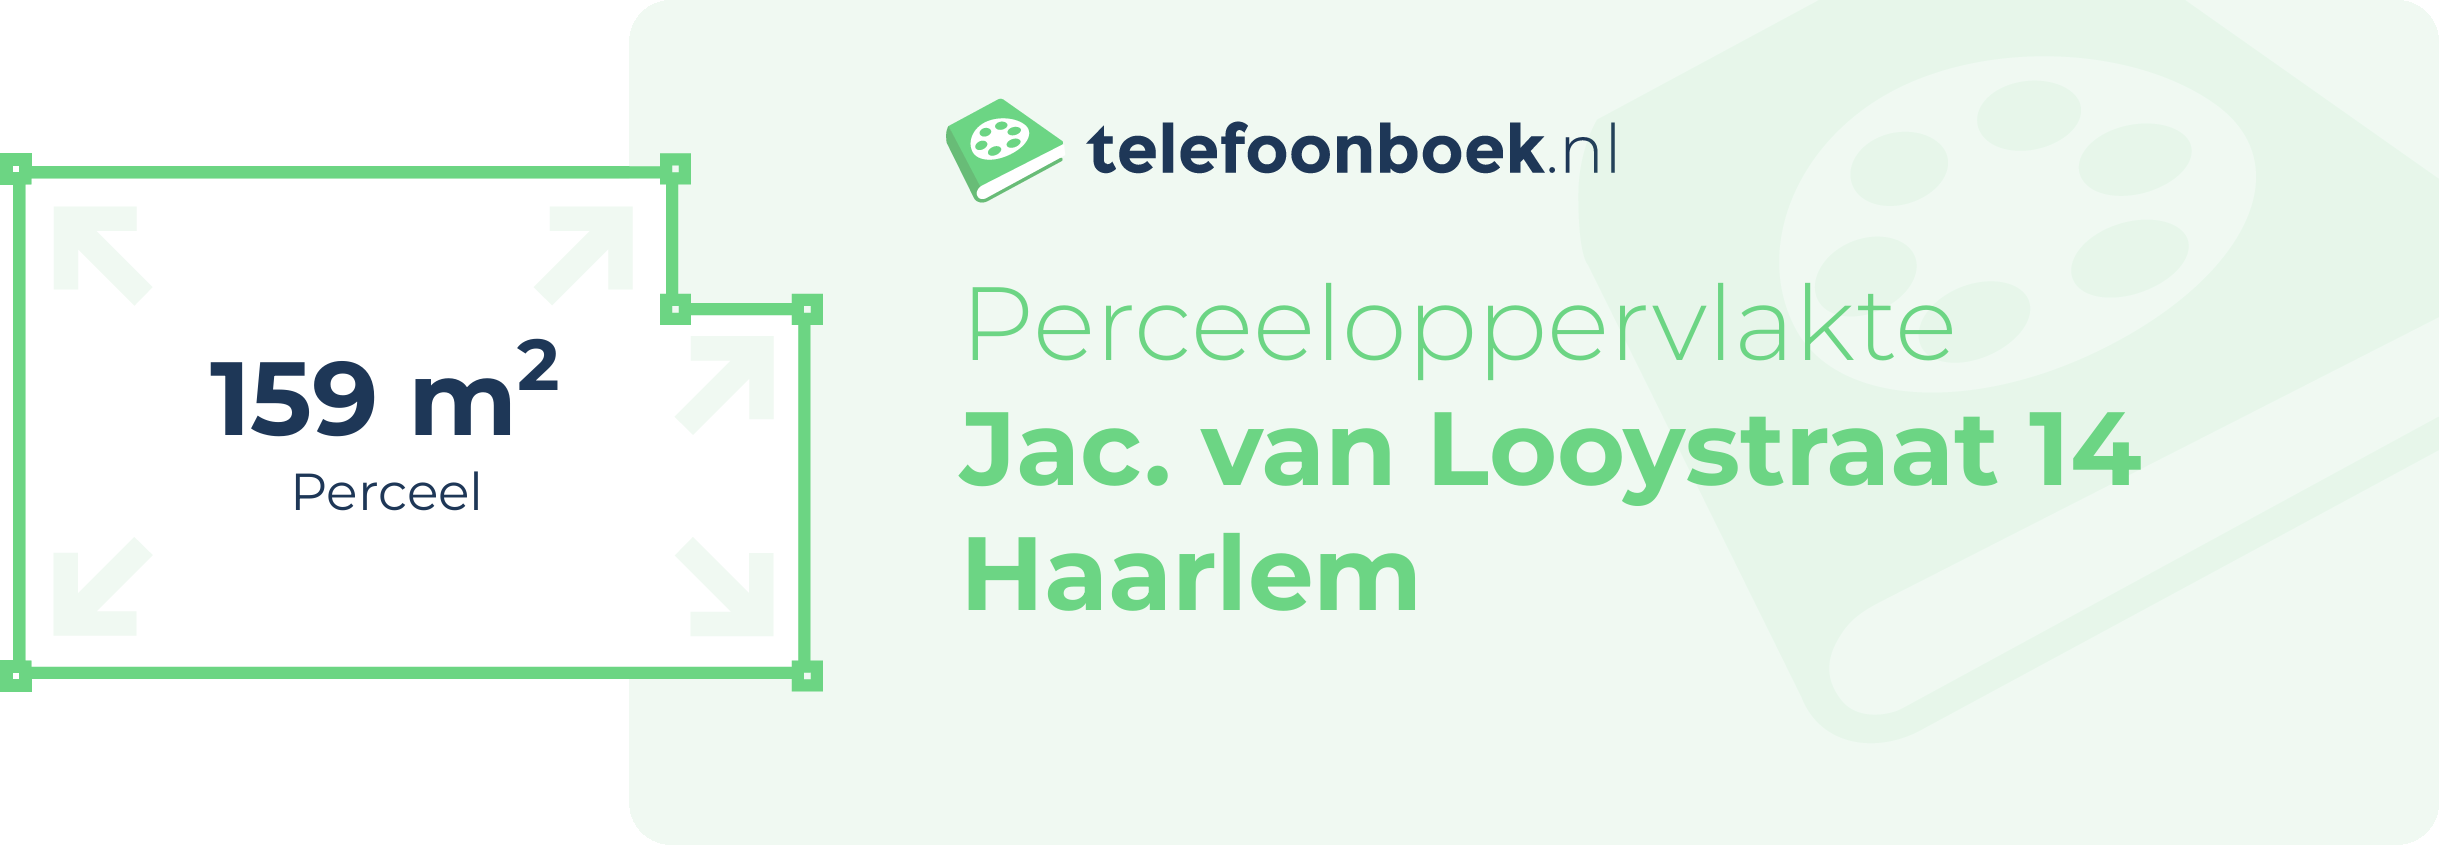 Perceeloppervlakte Jac. Van Looystraat 14 Haarlem